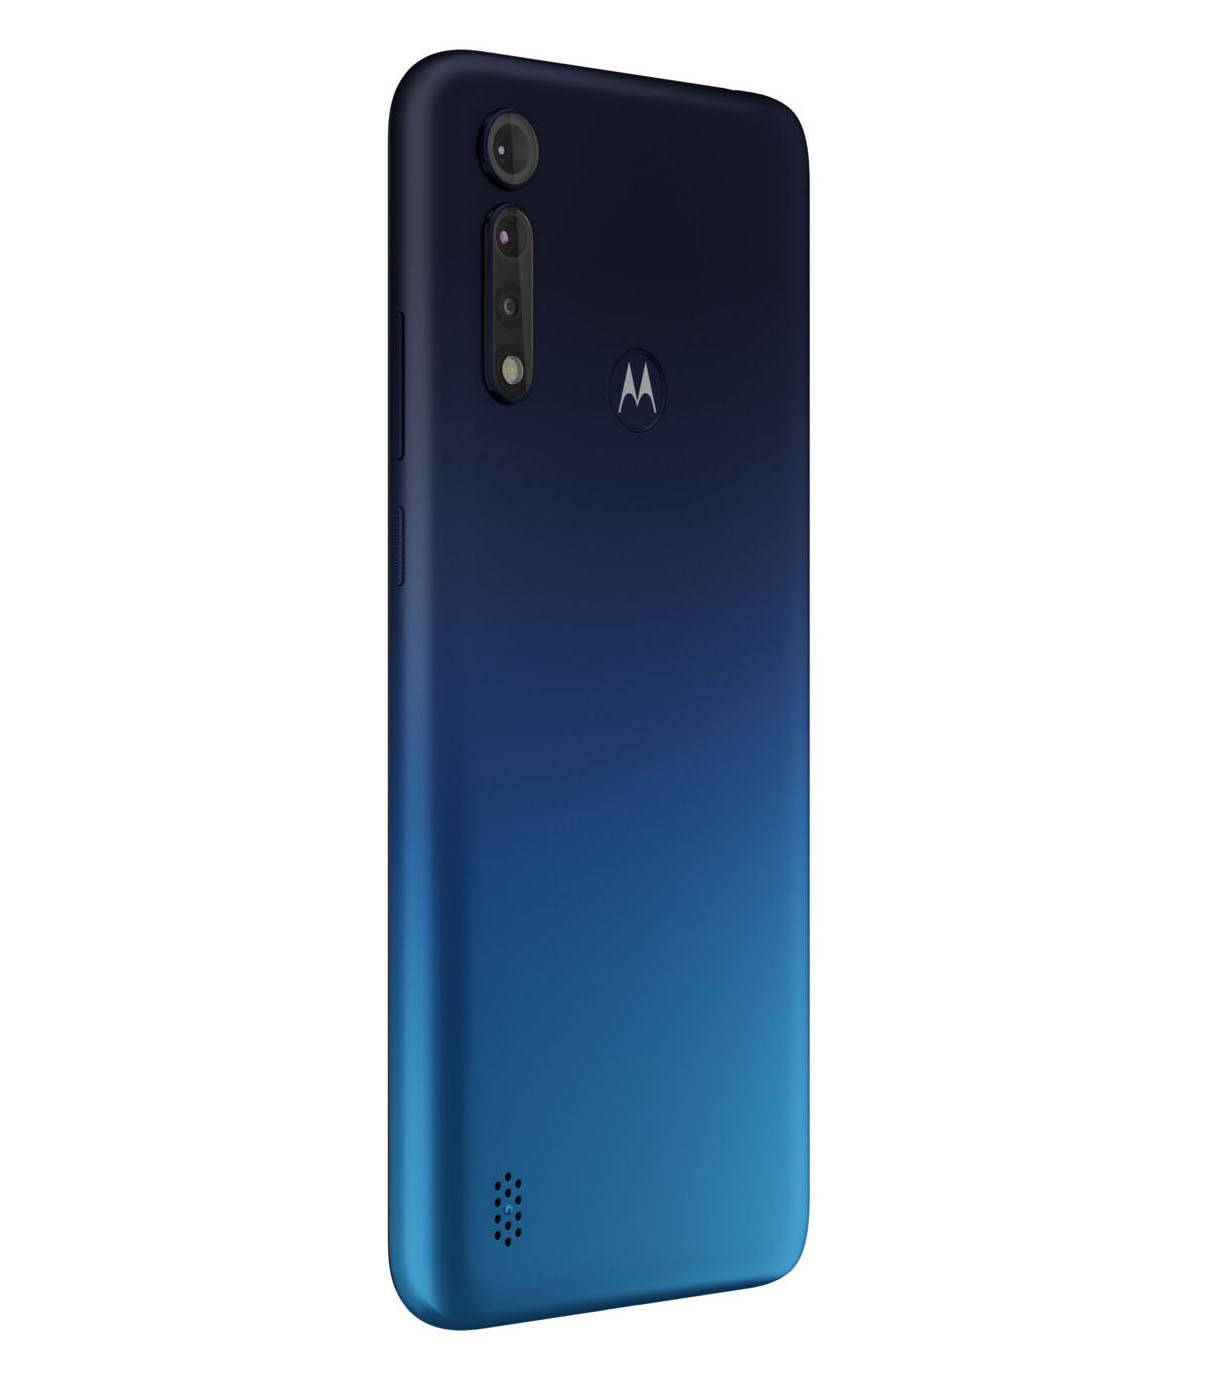 MOTOROLA REFURBISHED (*) Dual-SIM GB SIM 64 blau Dual Power G8 Moto Lite